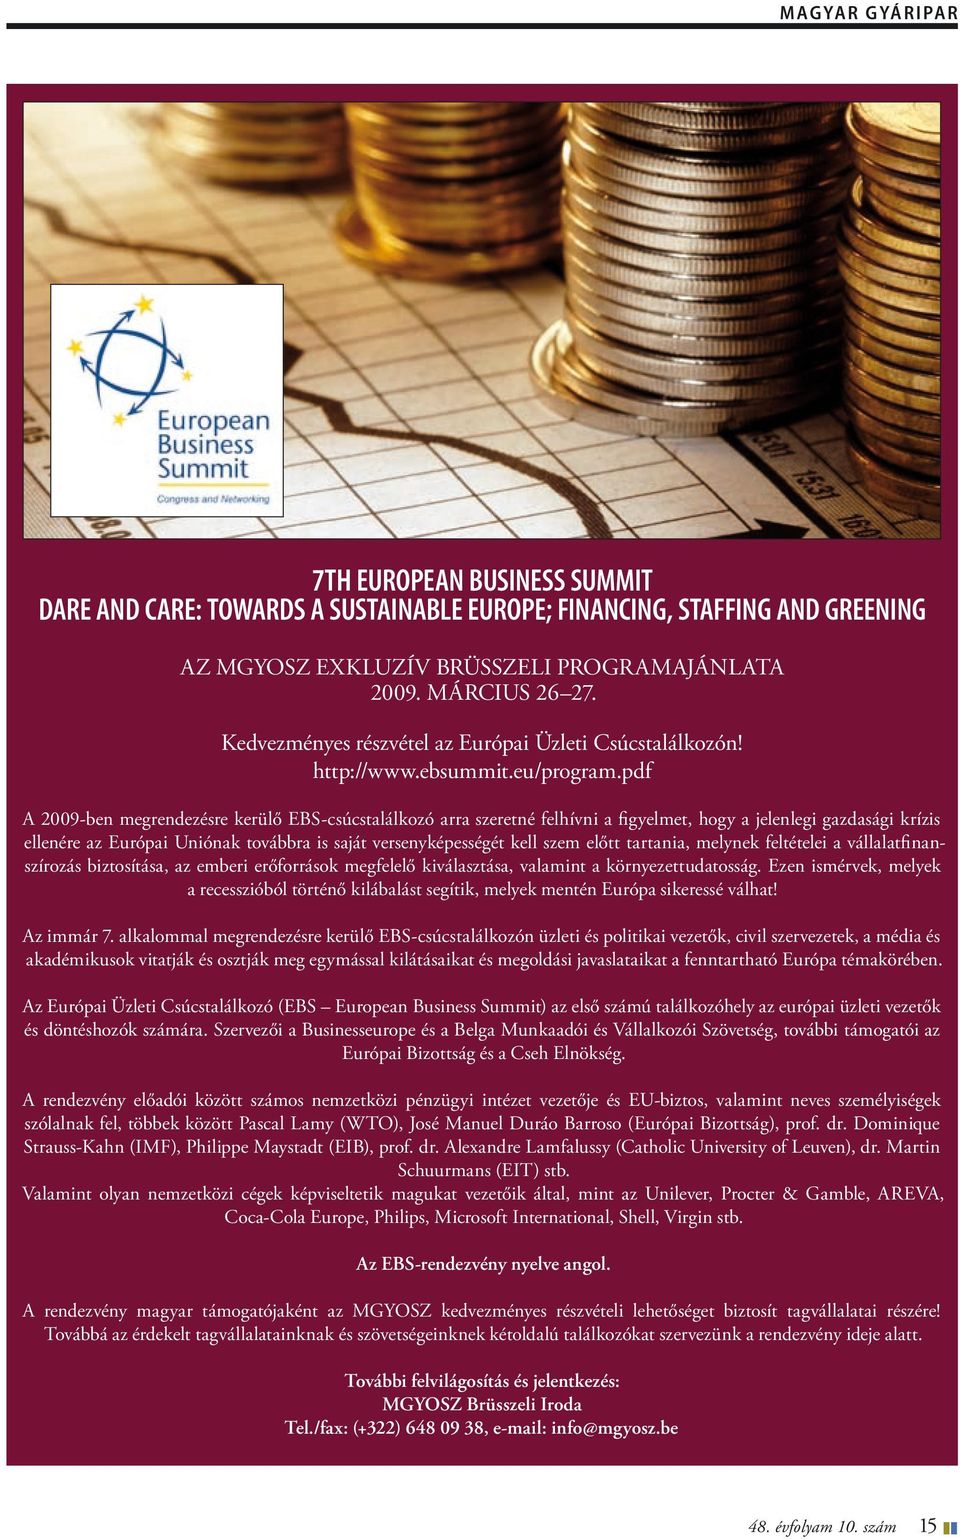 pdf A 2009-ben megrendezésre kerülő EBS-csúcstalálkozó arra szeretné felhívni a figyelmet, hogy a jelenlegi gazdasági krízis ellenére az Európai Uniónak továbbra is saját versenyképességét kell szem